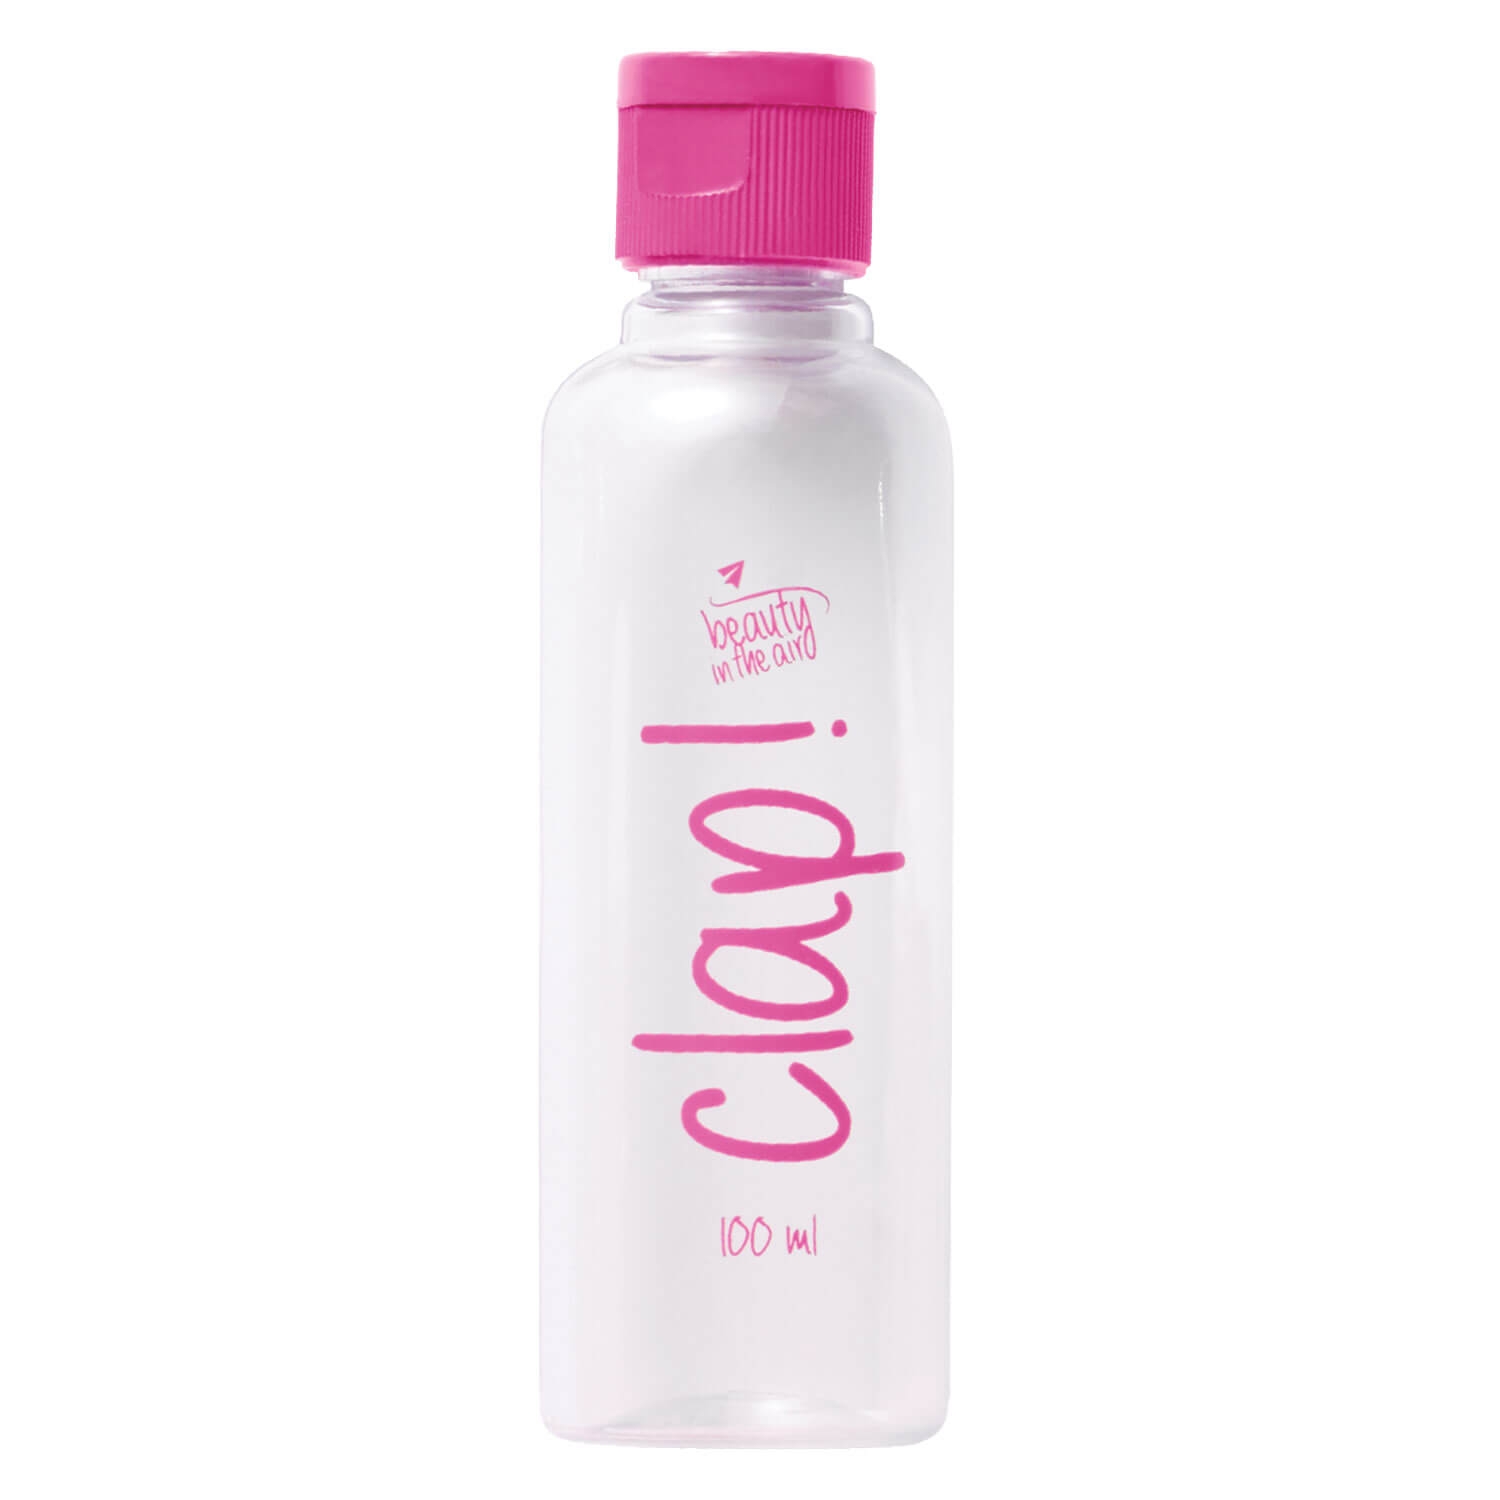 Produktbild von Beauty in the Air - Lotionsflasche